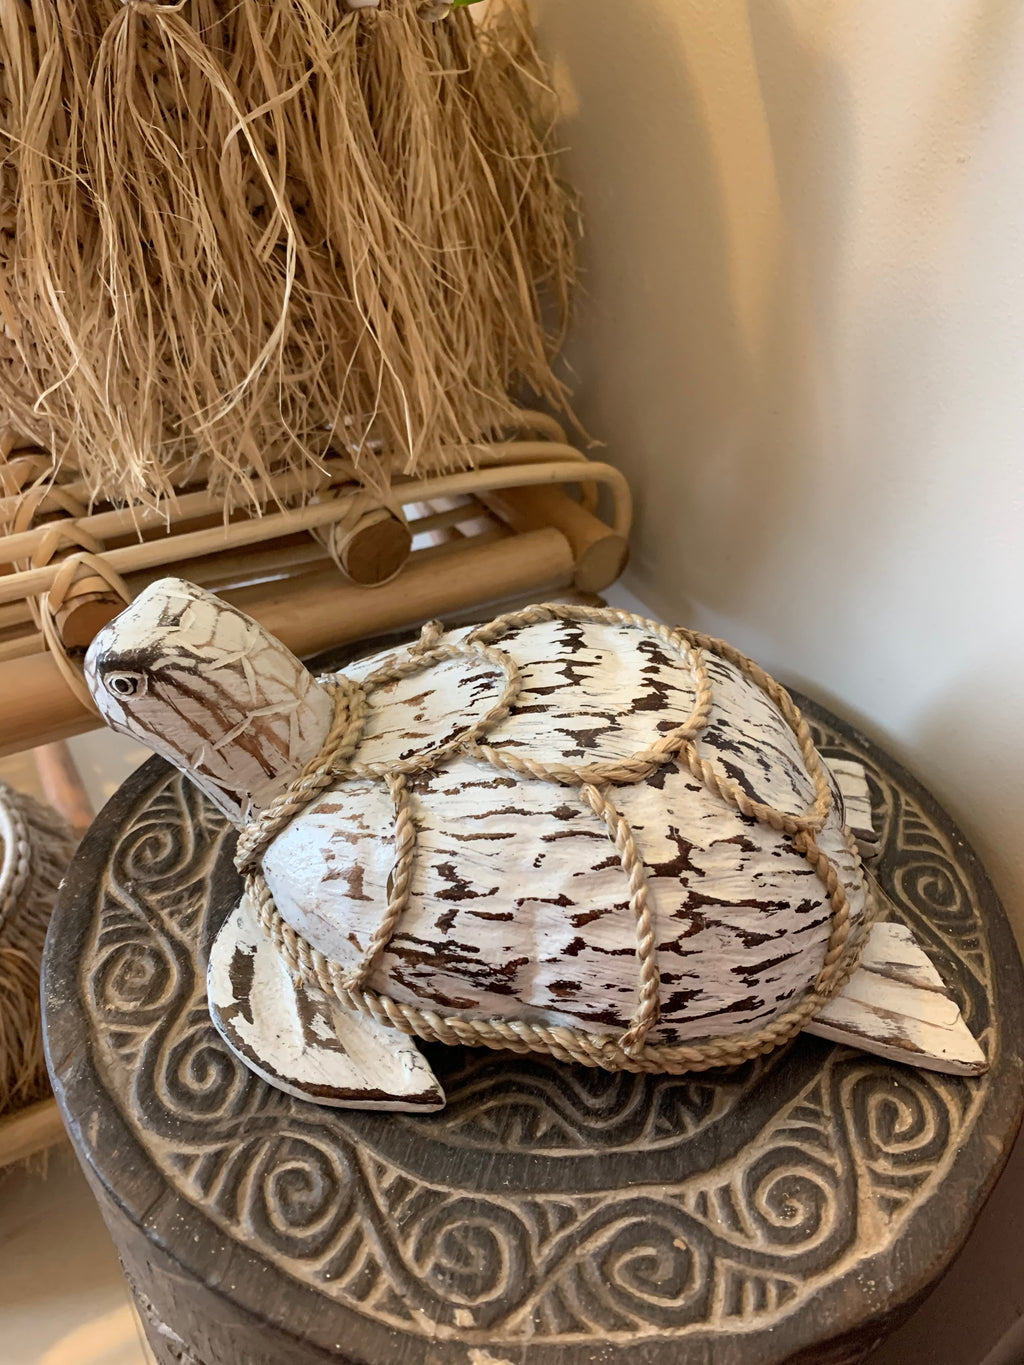 Coconut turtle. White